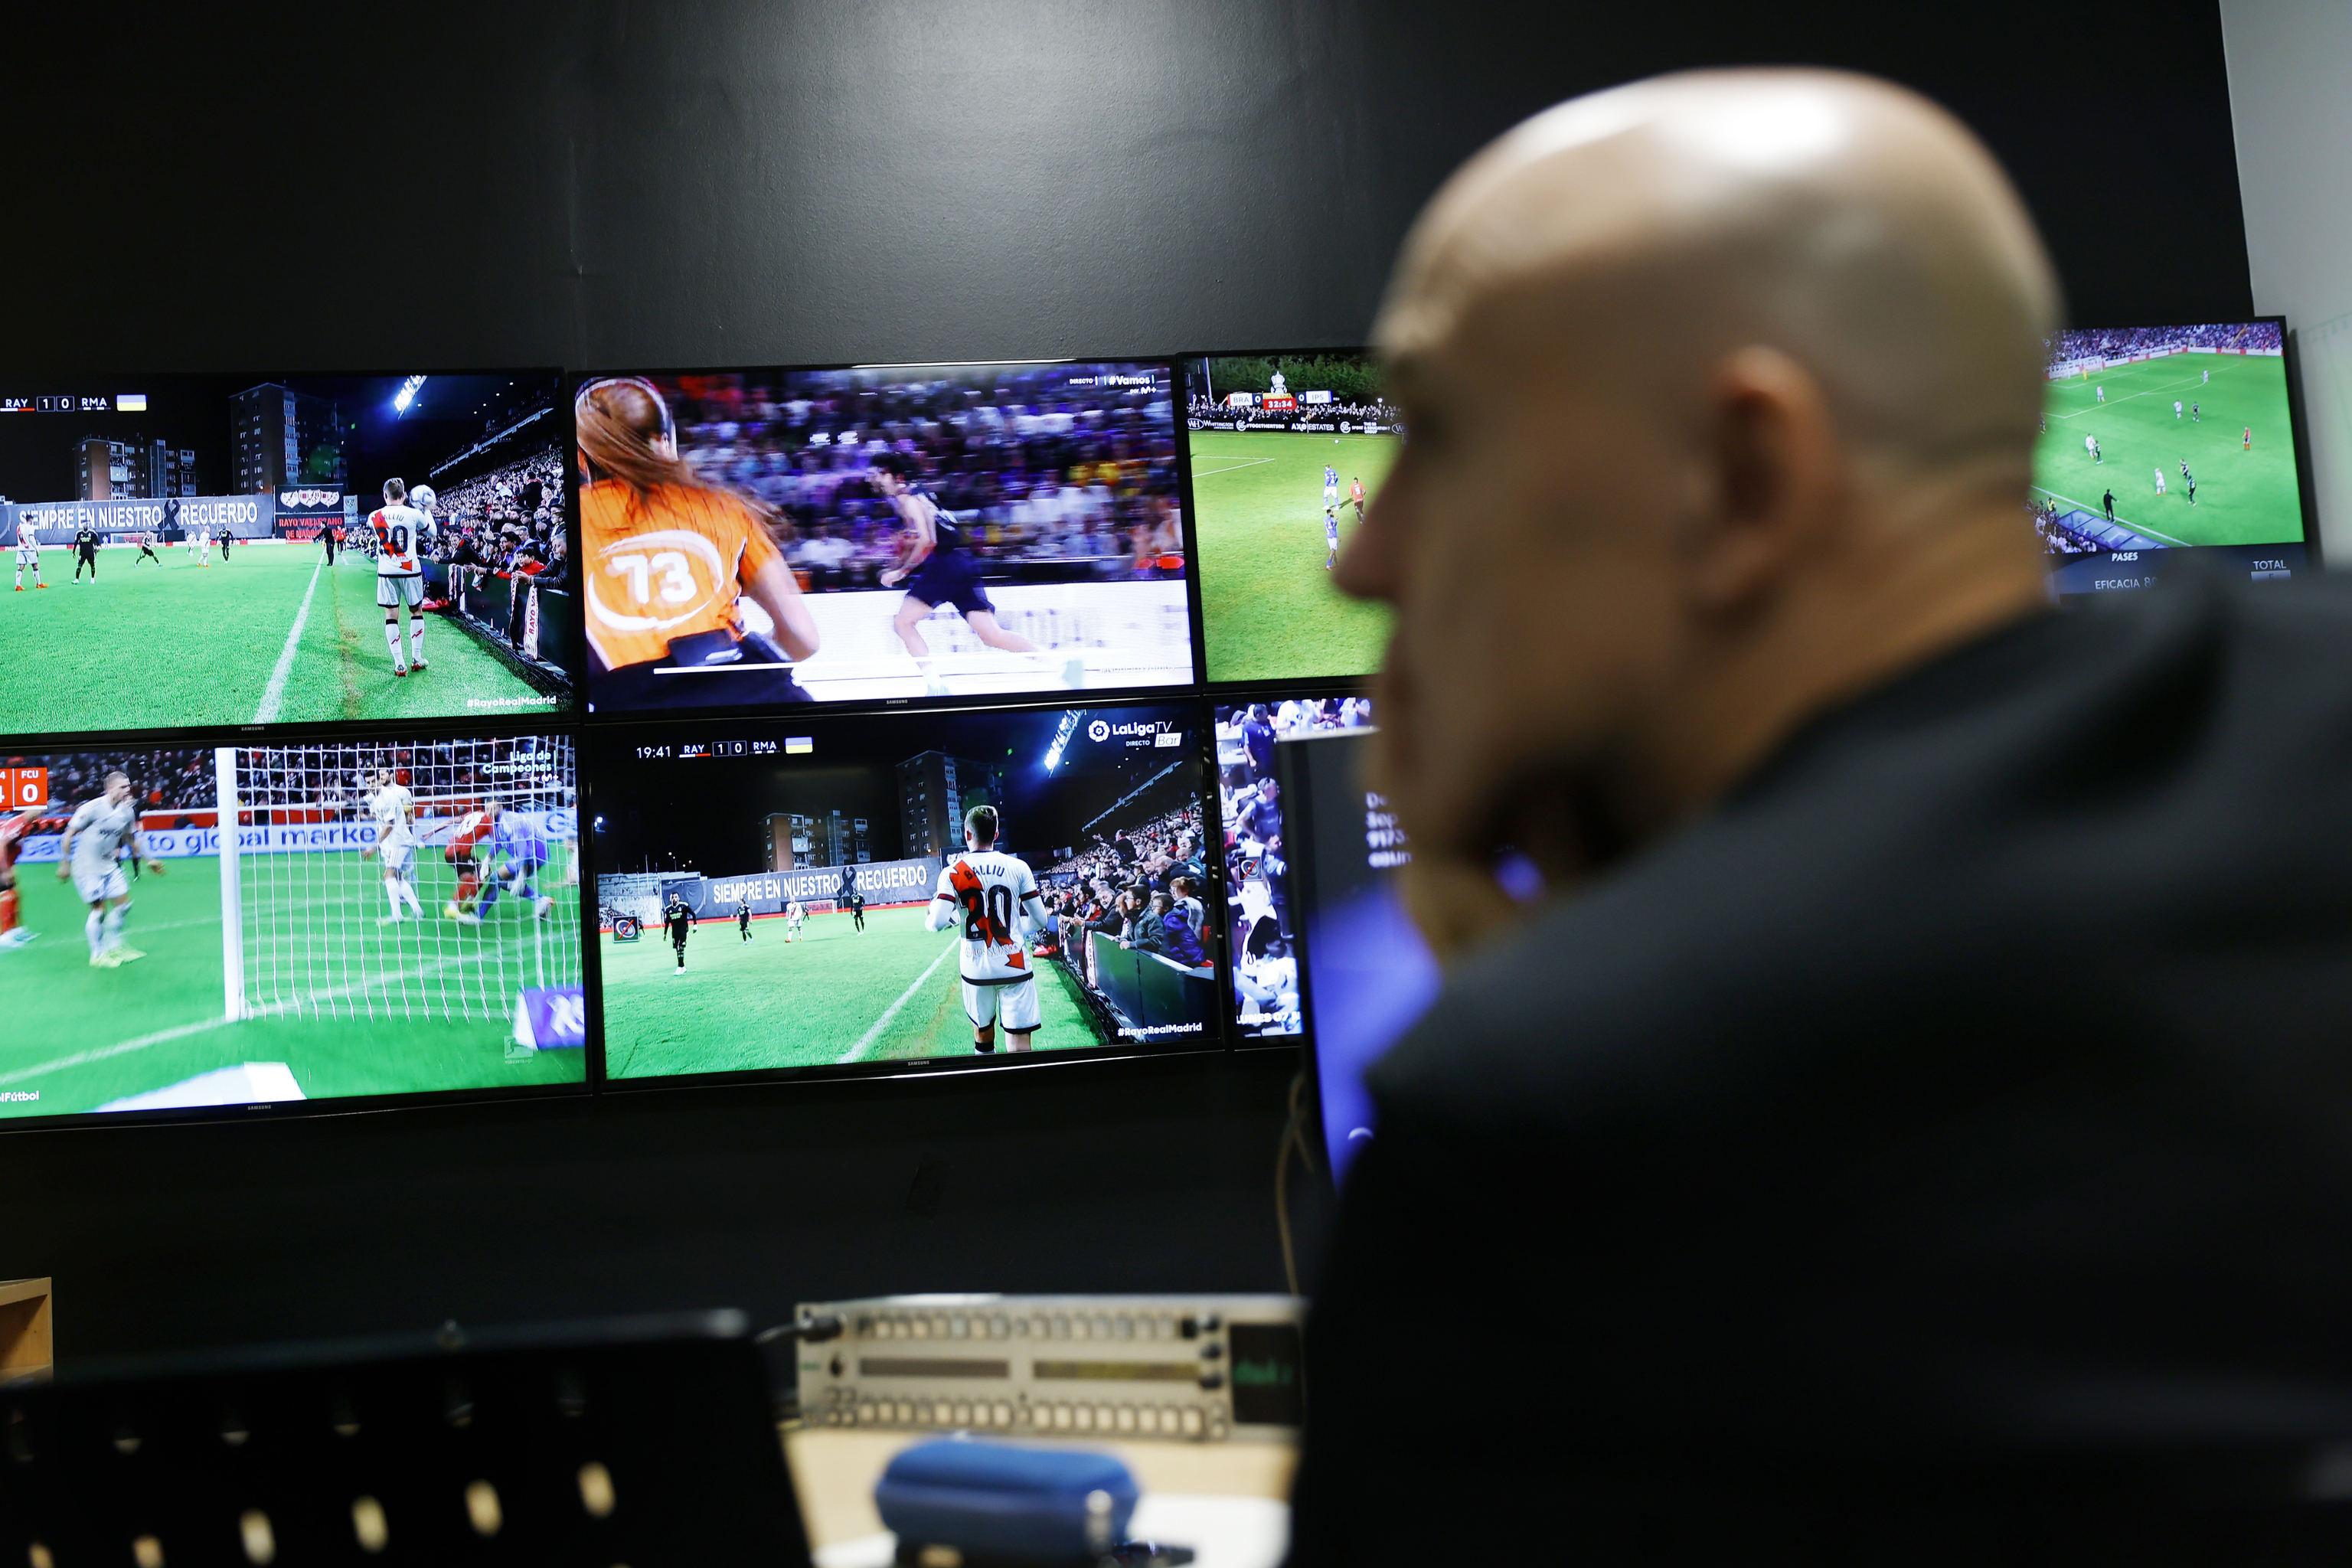 RTVE emitirá el Mundial de fútbol de Catar en UHD-4K en abierto